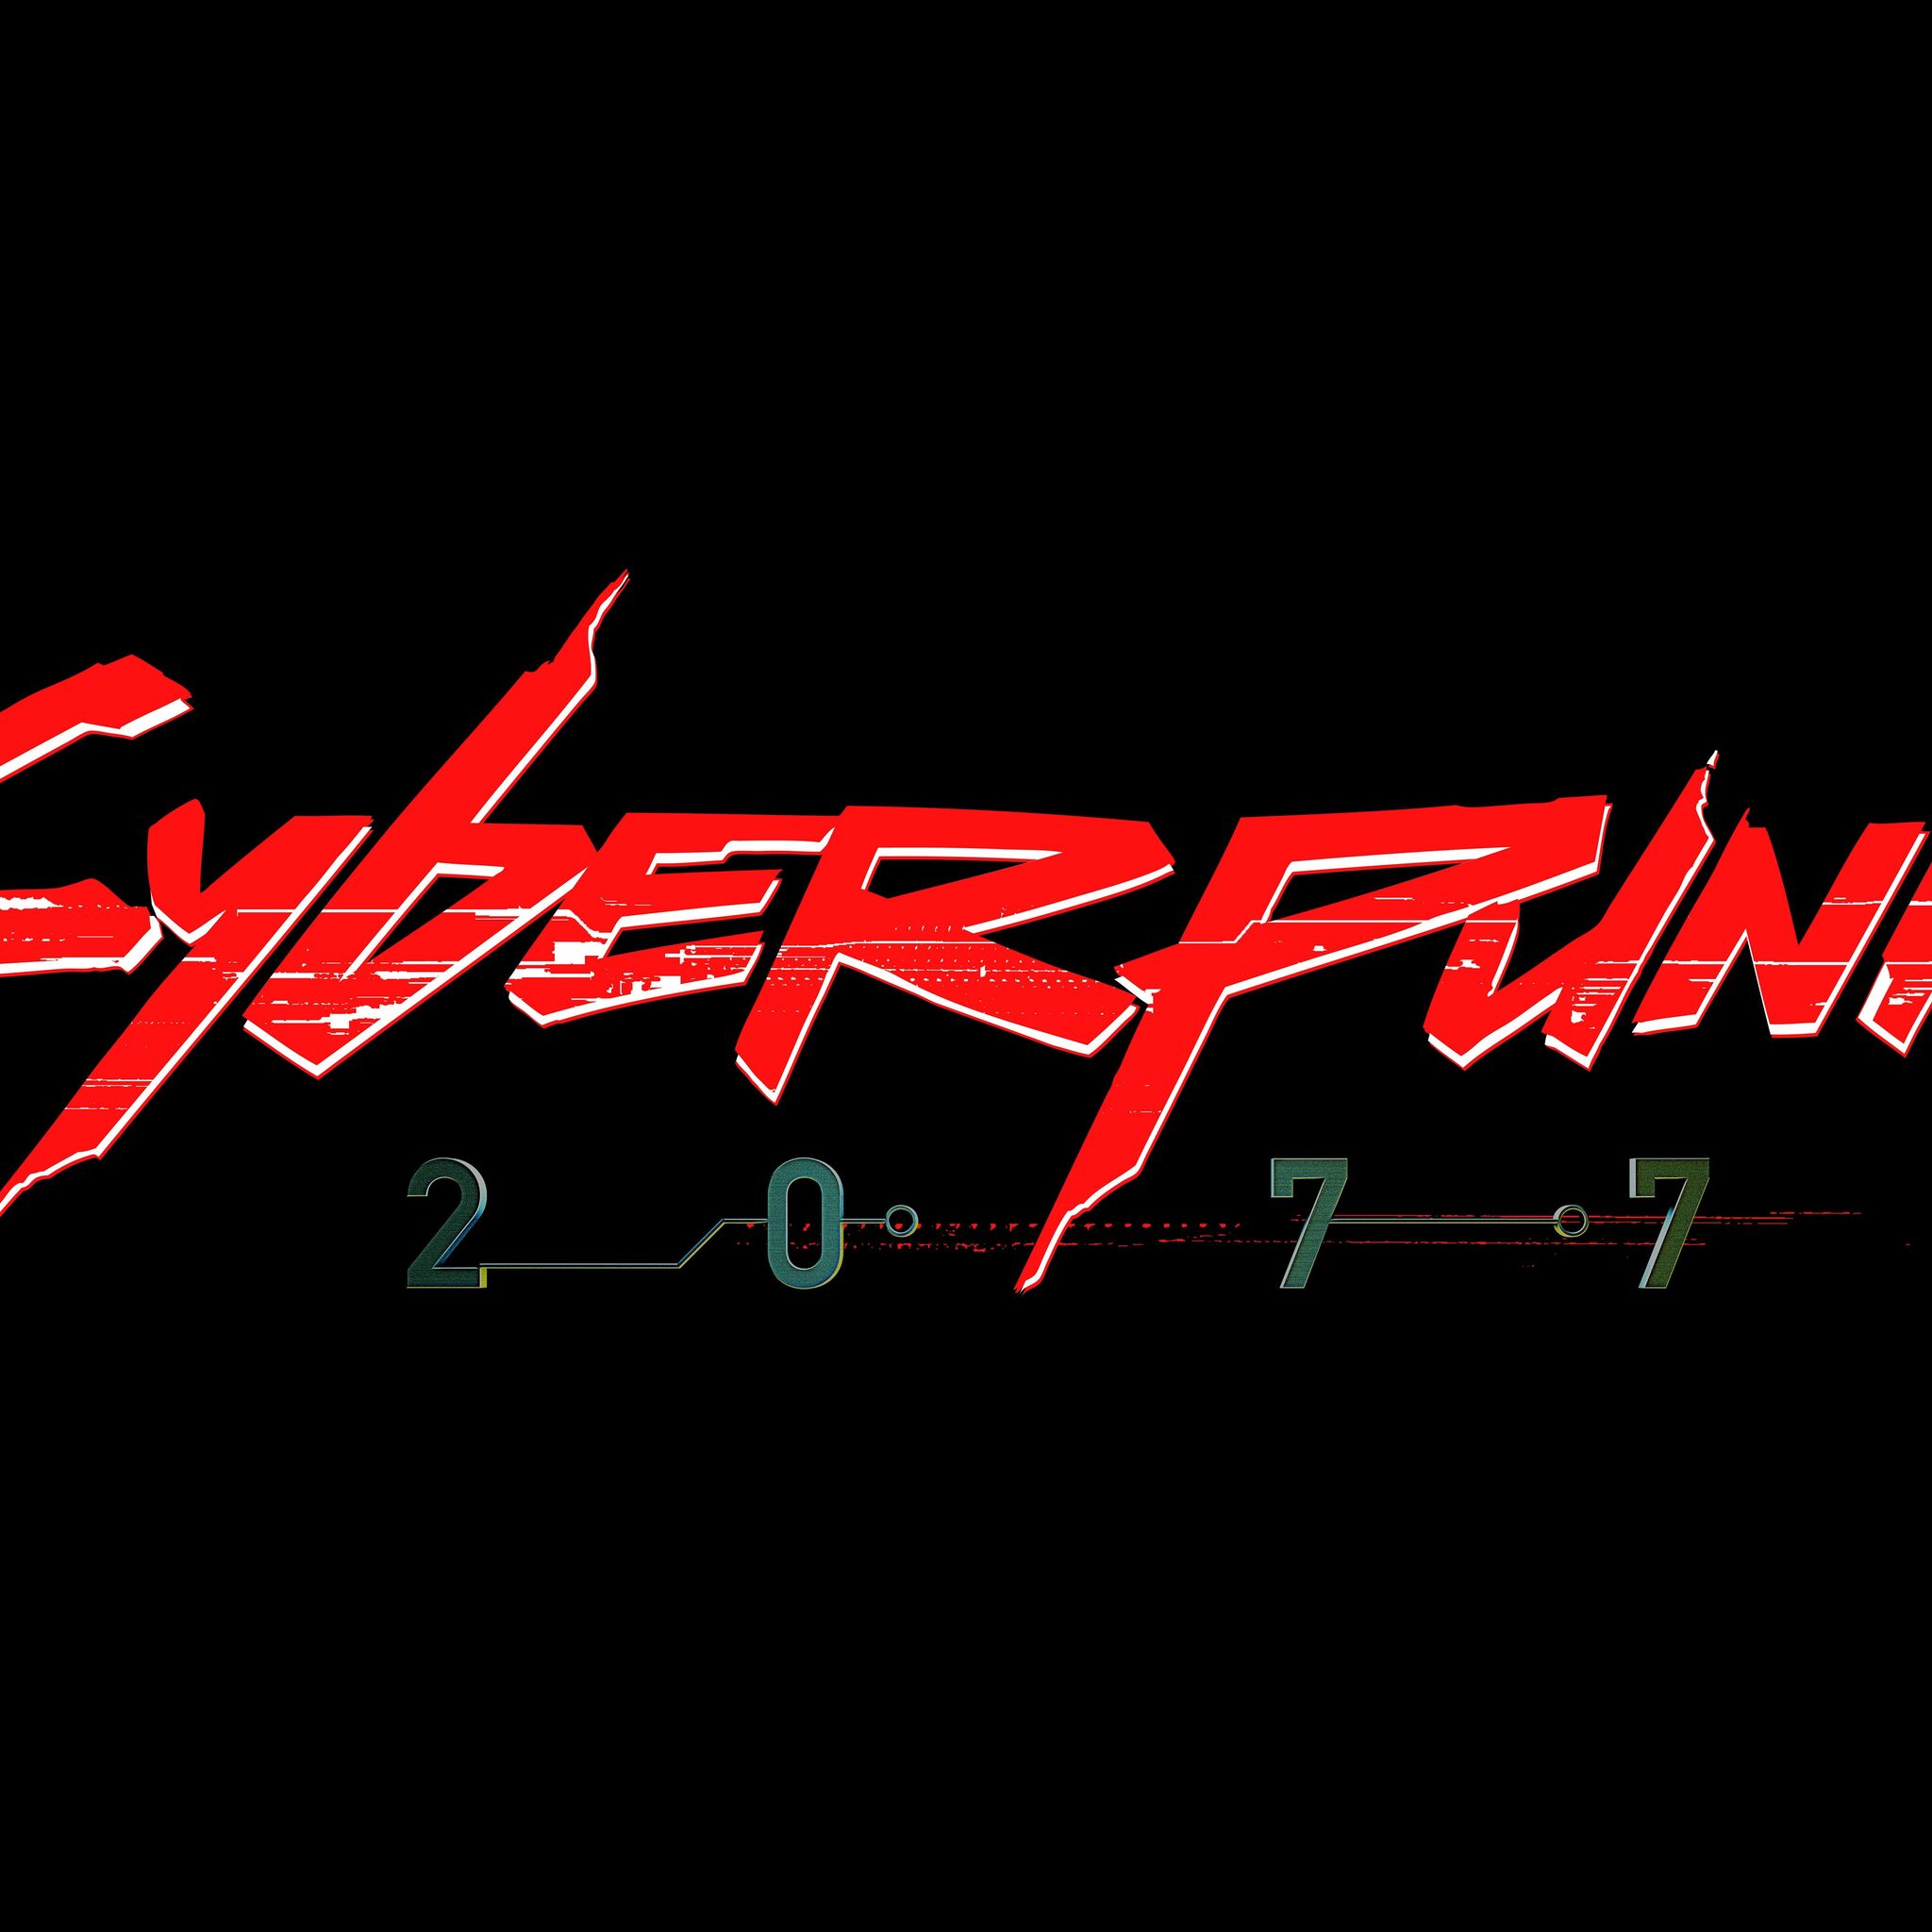 Cyberpunk logo ae фото 79